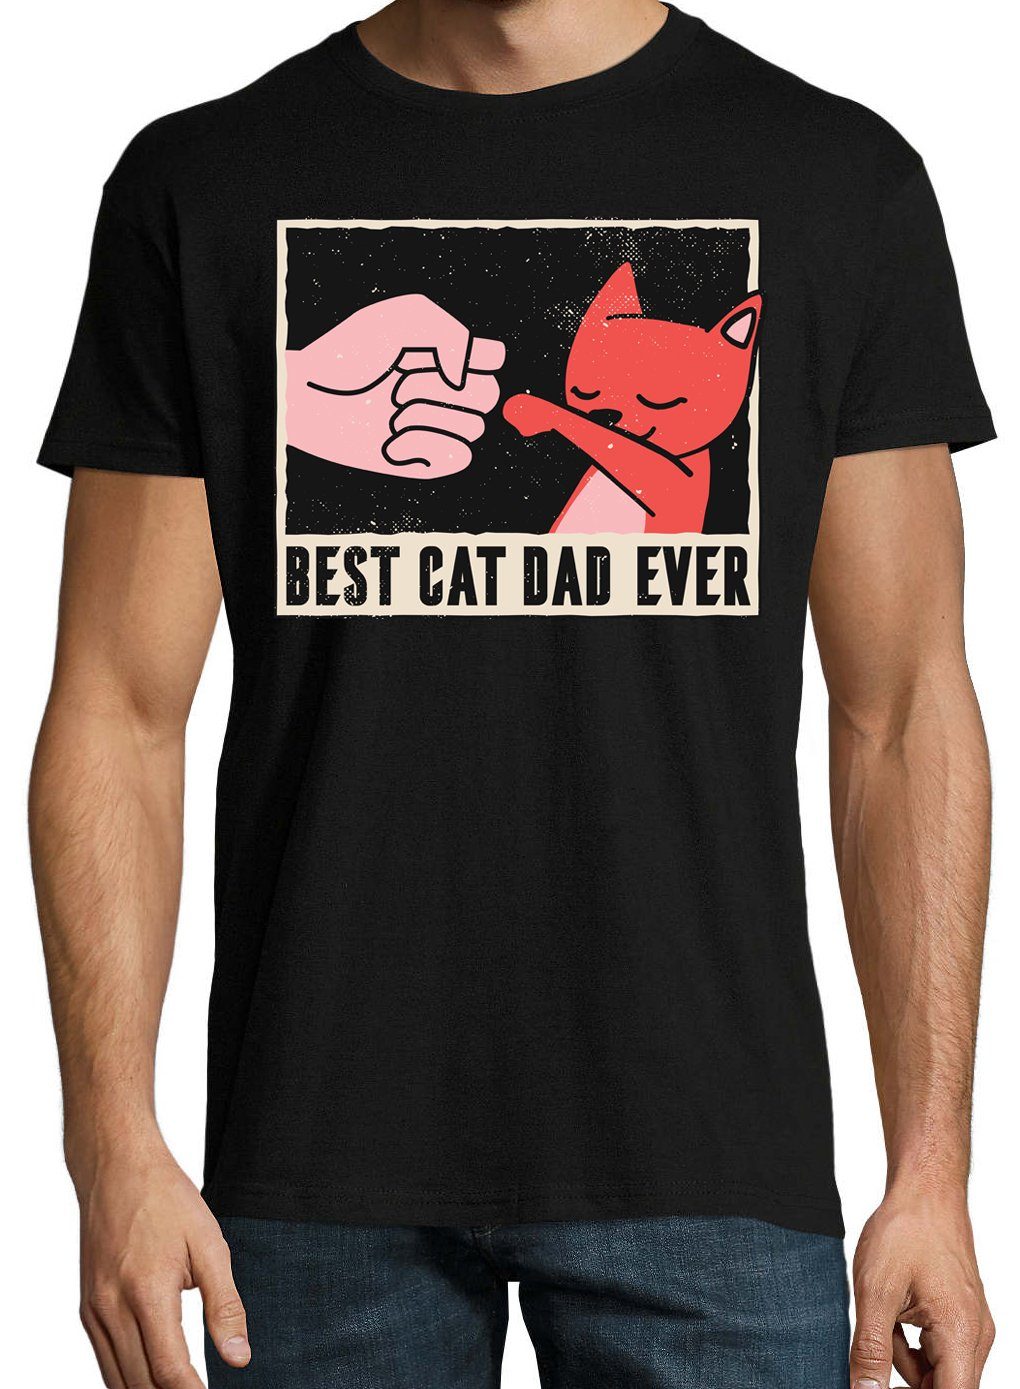 Ever lustigem Youth Schwarz Herren Dad Cat Frontprint Best Shirt T-Shirt Designz mit